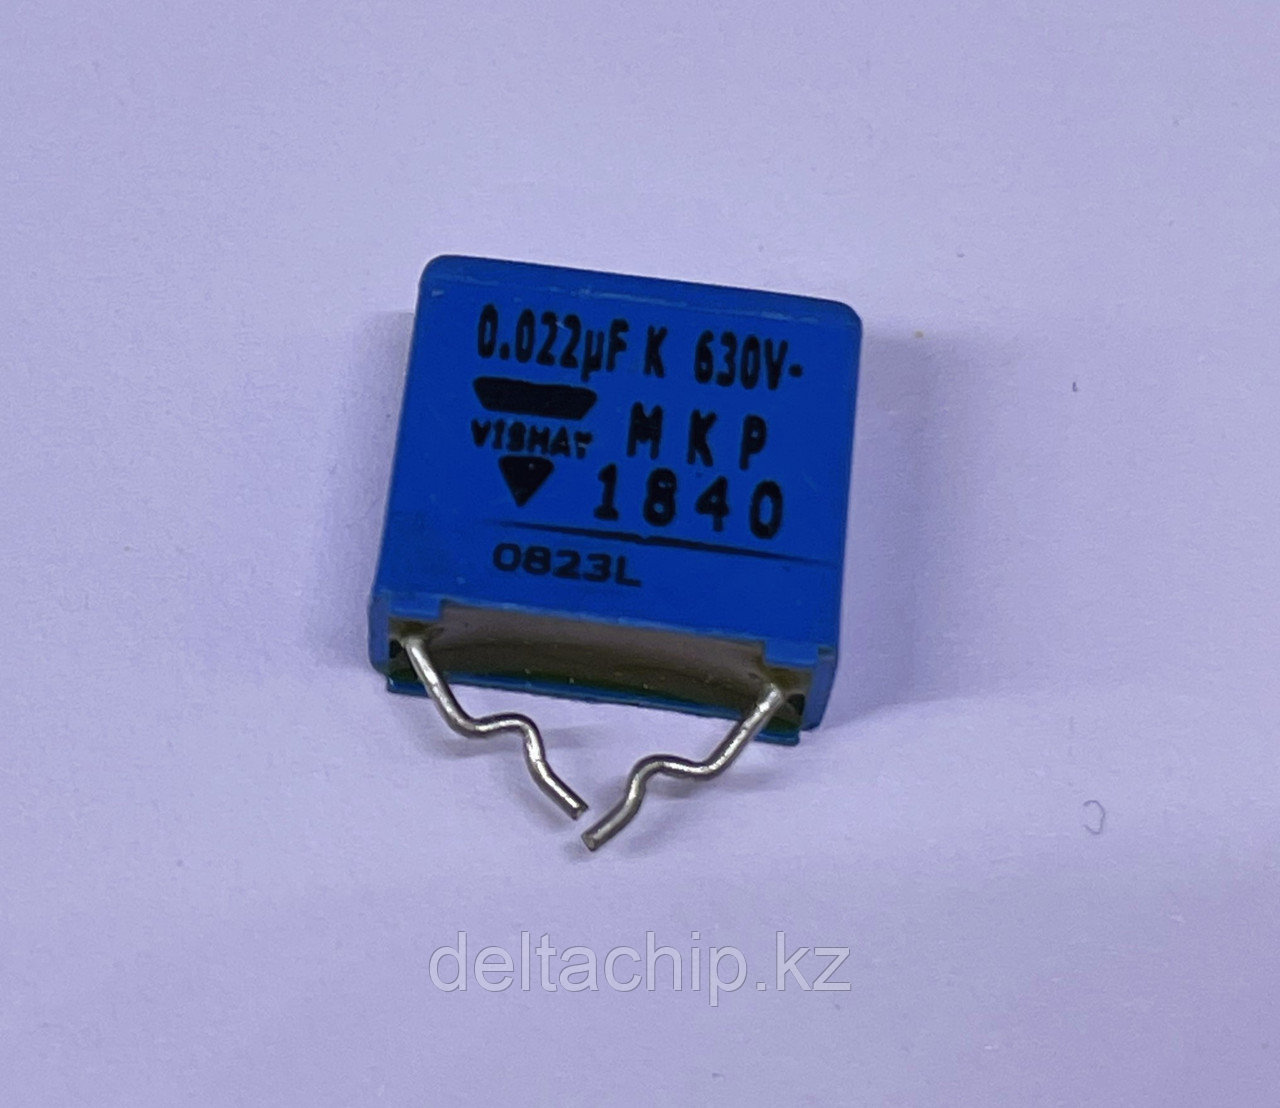 0.022mf 630v пленочный конденсатор